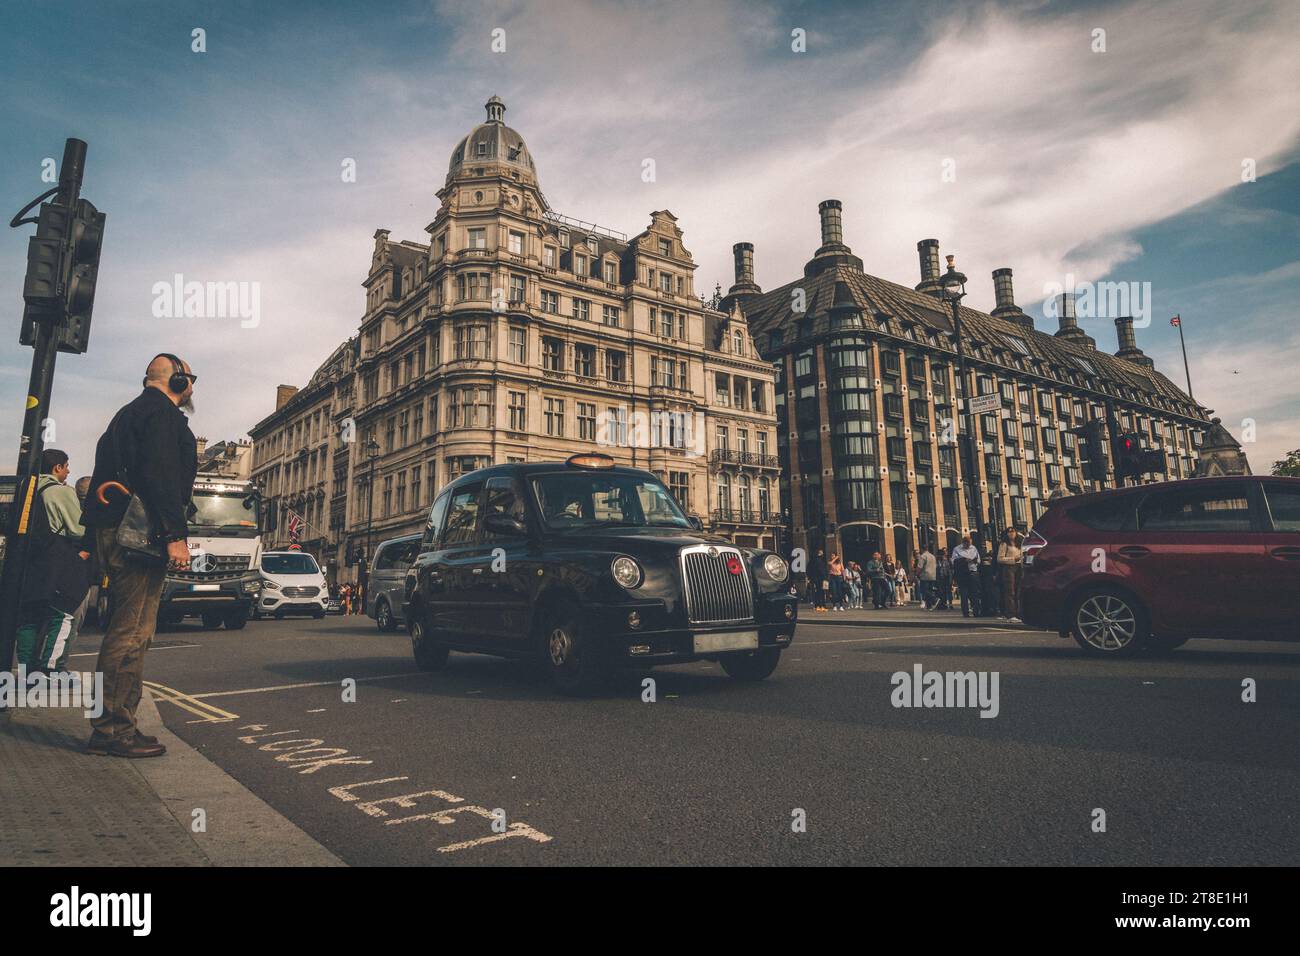 Un taxi anglais, style londonien Banque D'Images